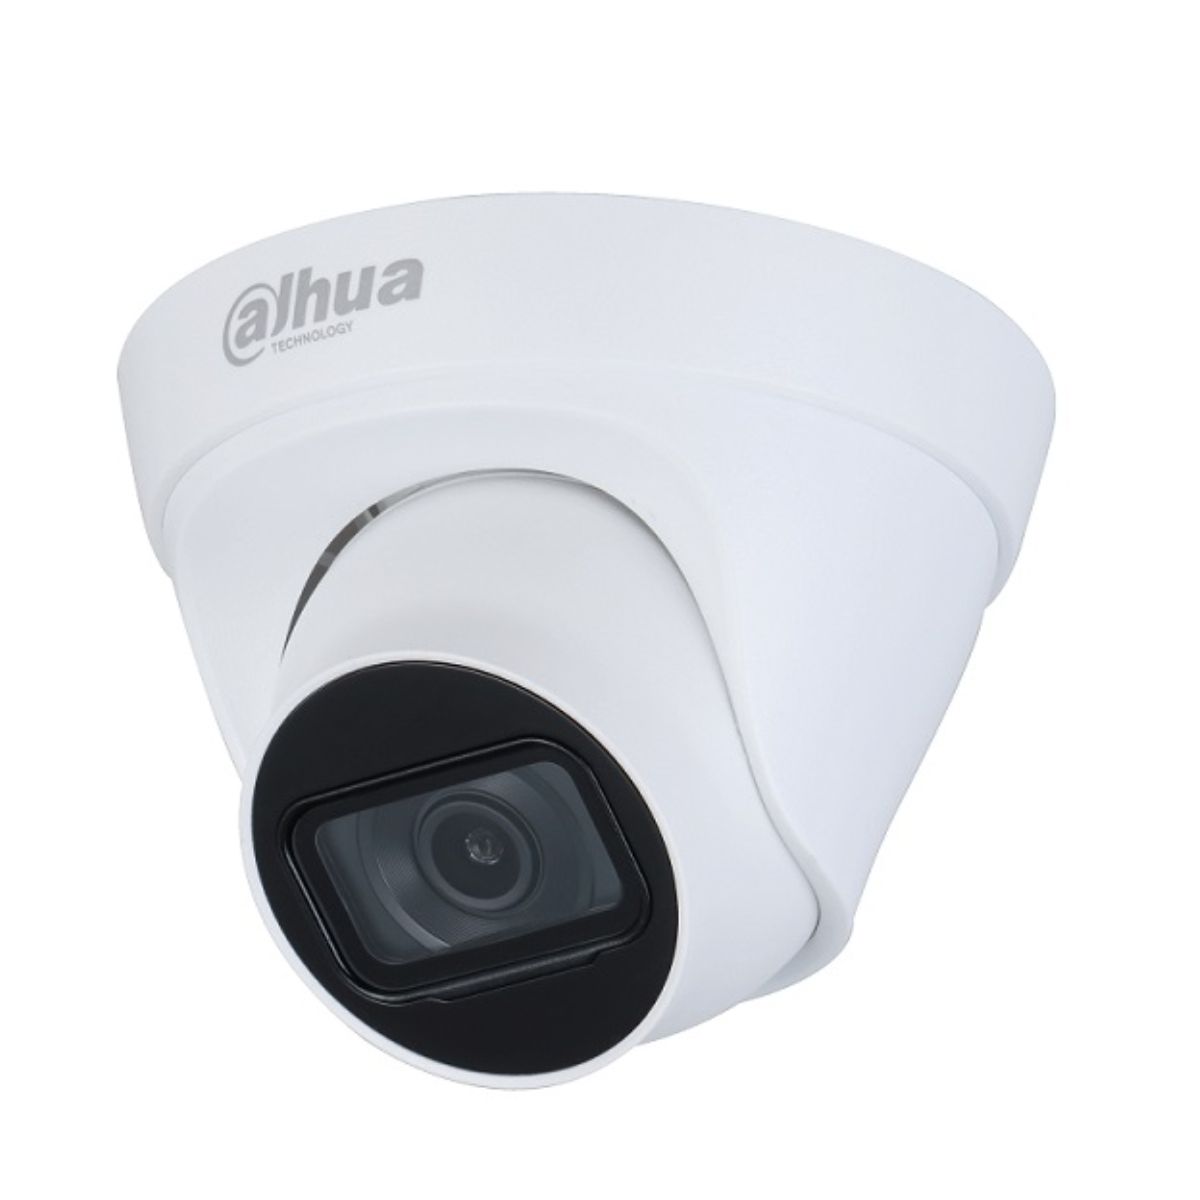 Camera Dome IP Dahua DH-IPC-HDW1230T1P-S5-VN 2MP 1080P, hồng ngoại 30m, chống ngược sáng DWDR 